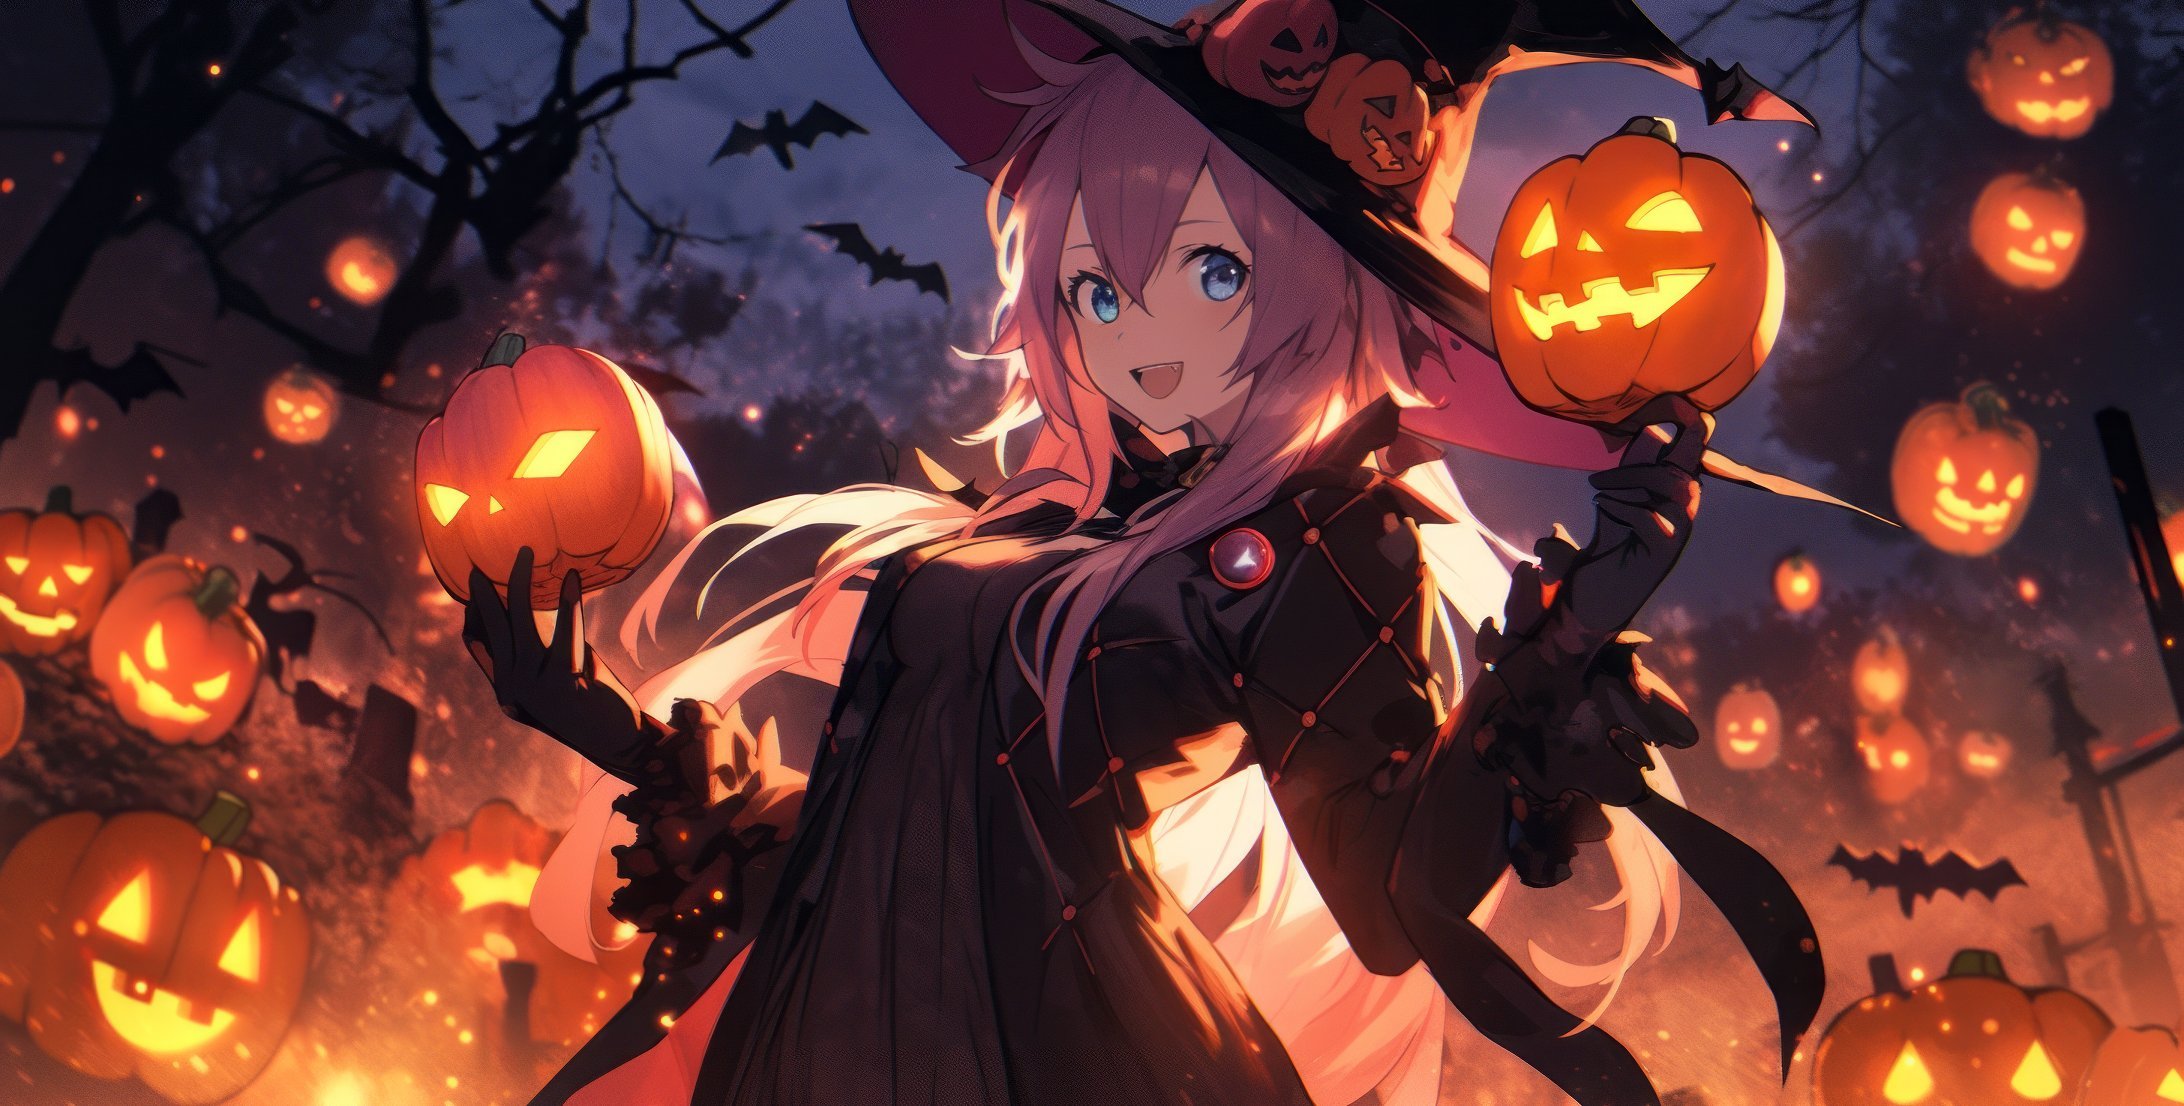 Fondos de pantalla Chica anime en disfraz de Halloween